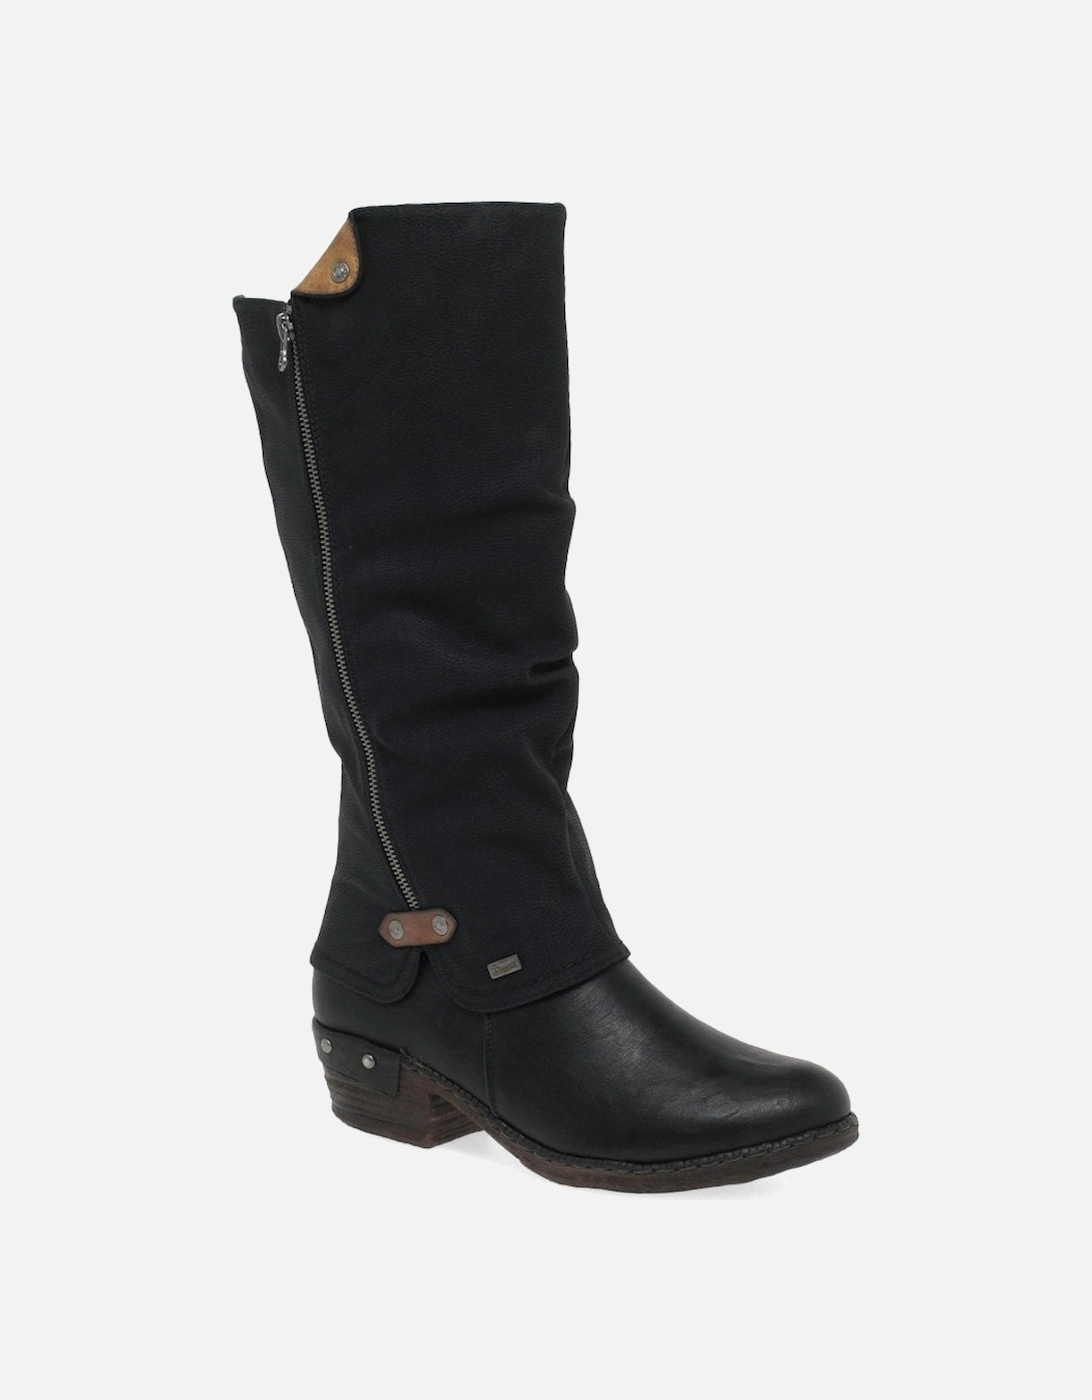 Rieker Women's 'Sierra' Long Boots|Size: 3.5|black